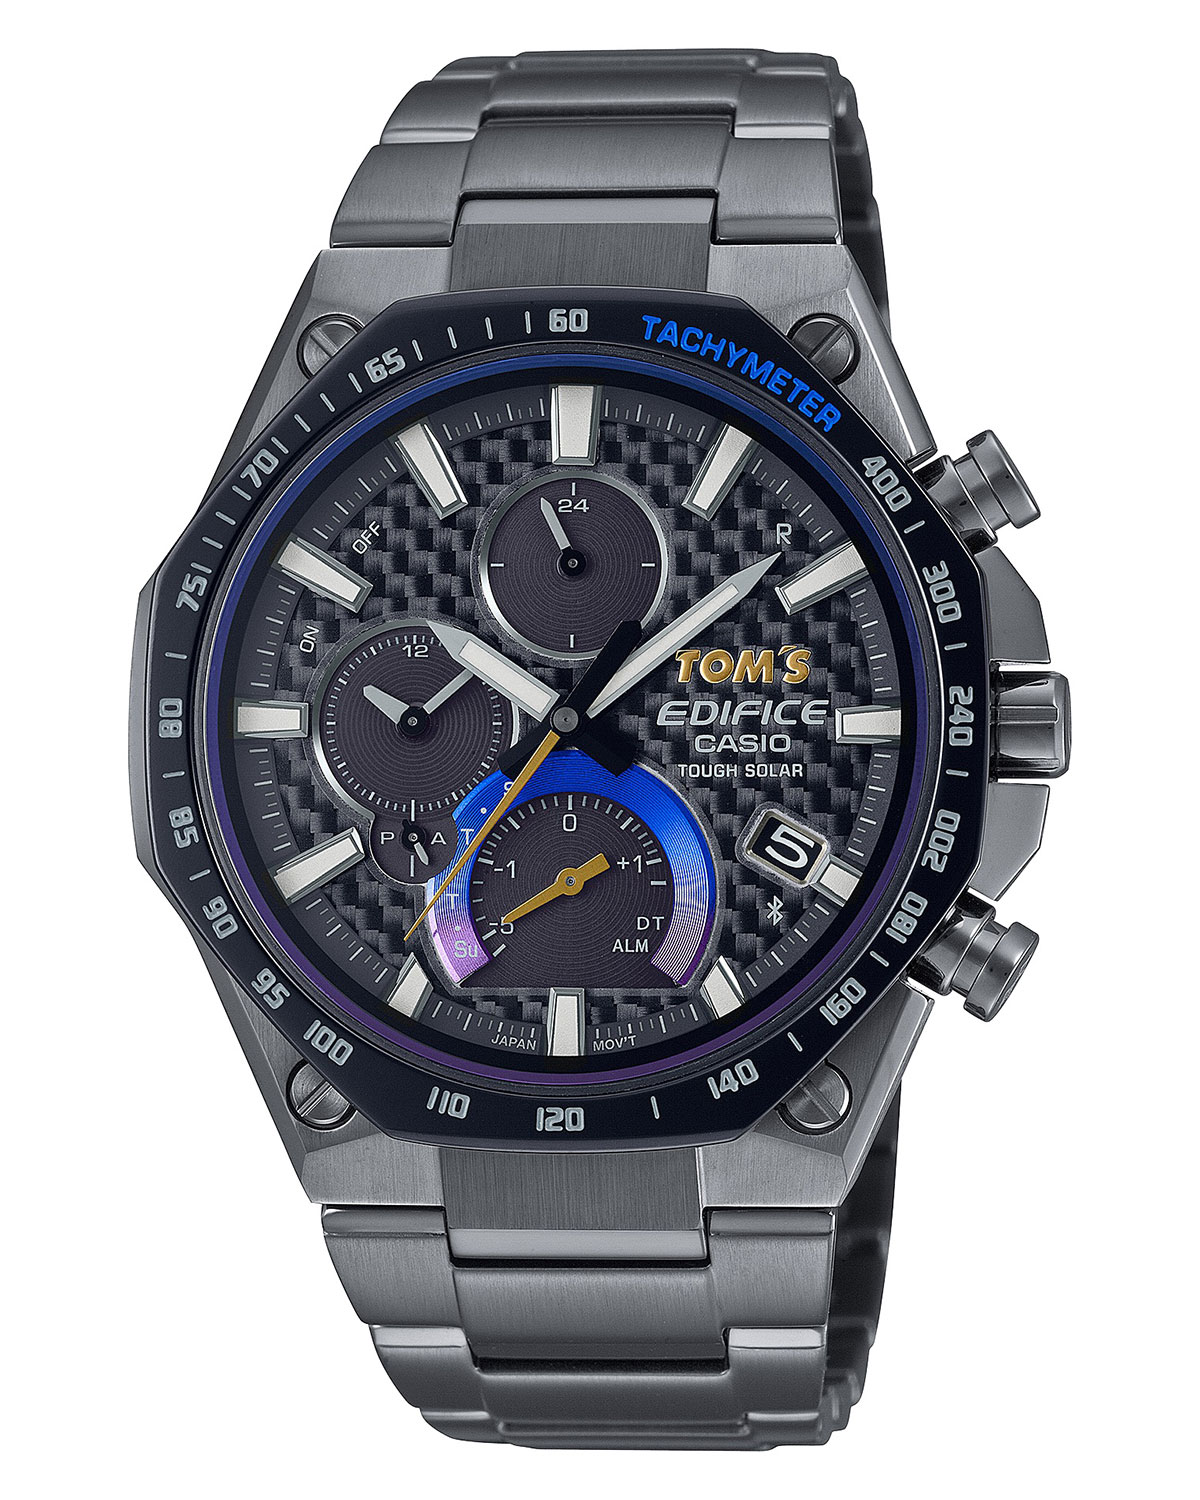 カシオ計算機の高機能アナログウォッチ「EDIFICE」とレーシングチーム「TOM’S」の新作コラボ腕時計「EQB-1100TMS」 (2)